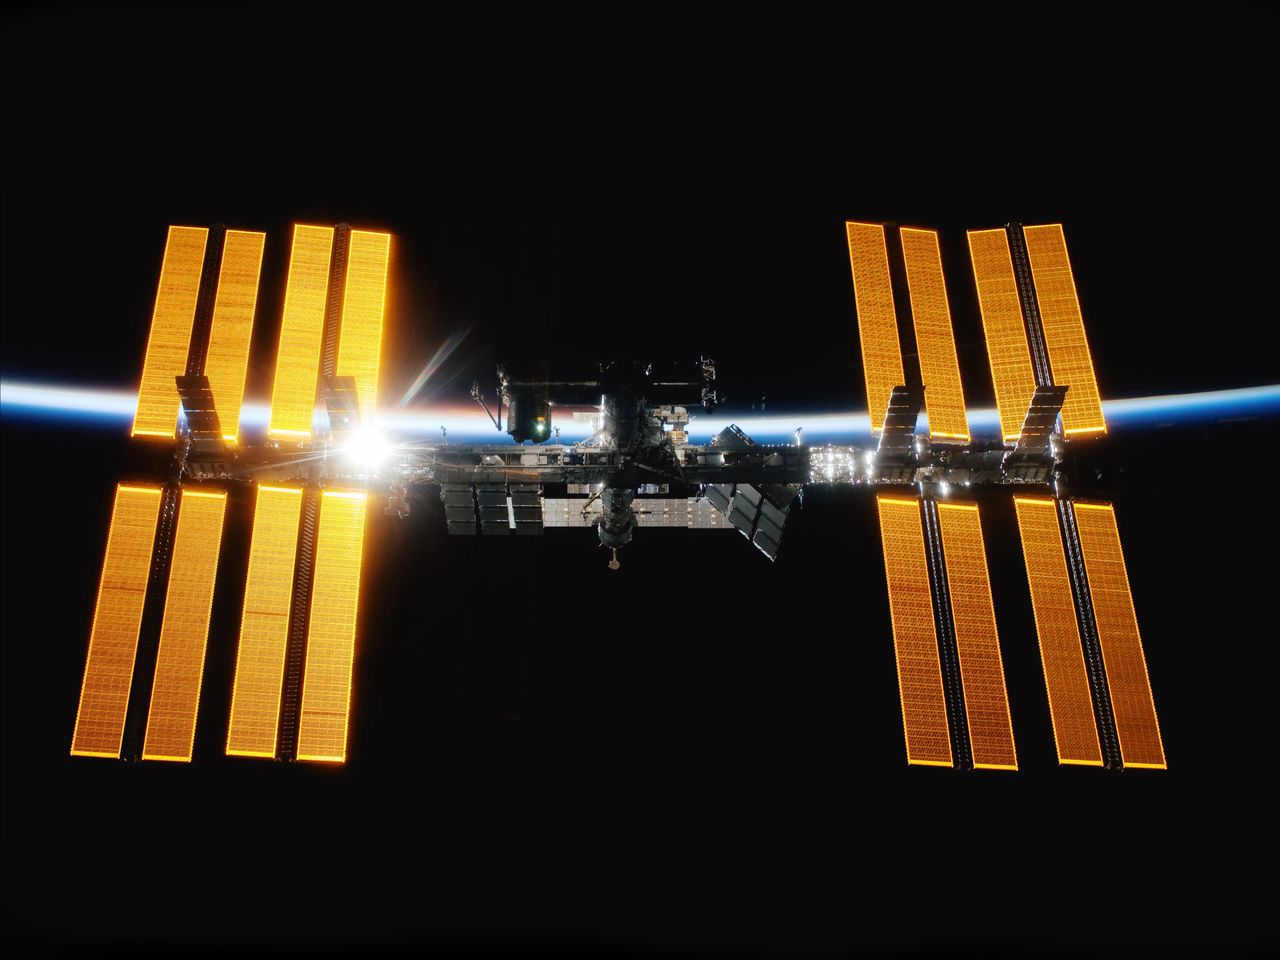 ISS nad Polską w zupełnie nowym wydaniu. Nagranie robi wrażenie